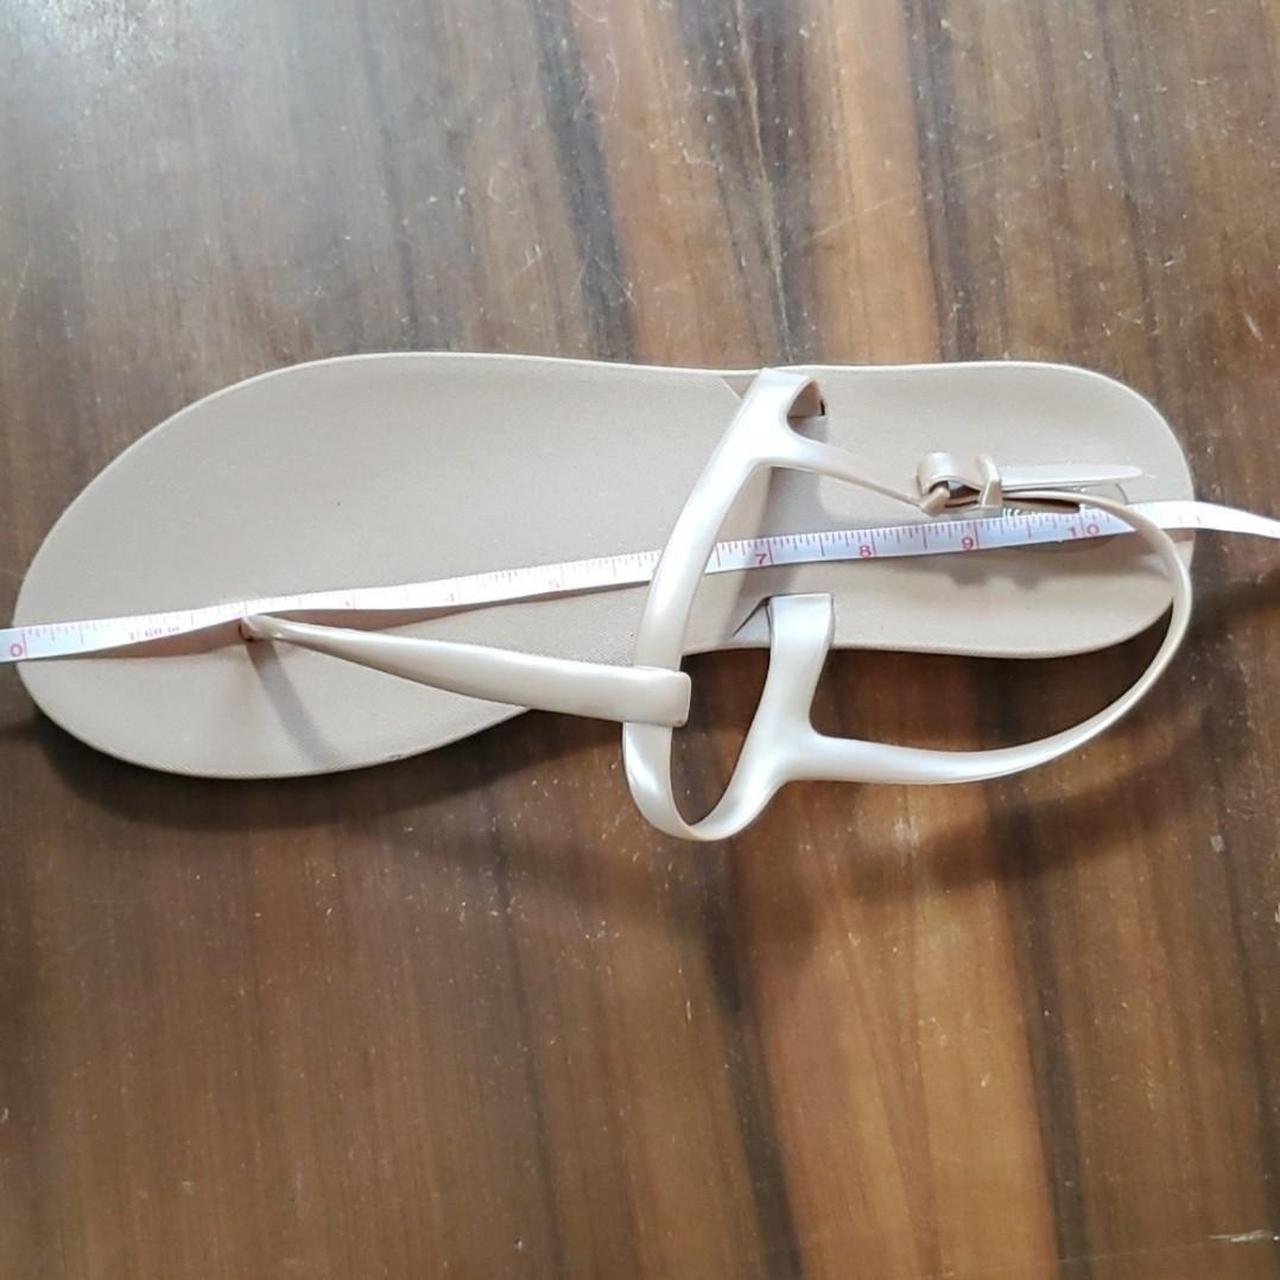 Third Oak Flip Flop Sandals Made in USA Size 10 & 11 - Depop